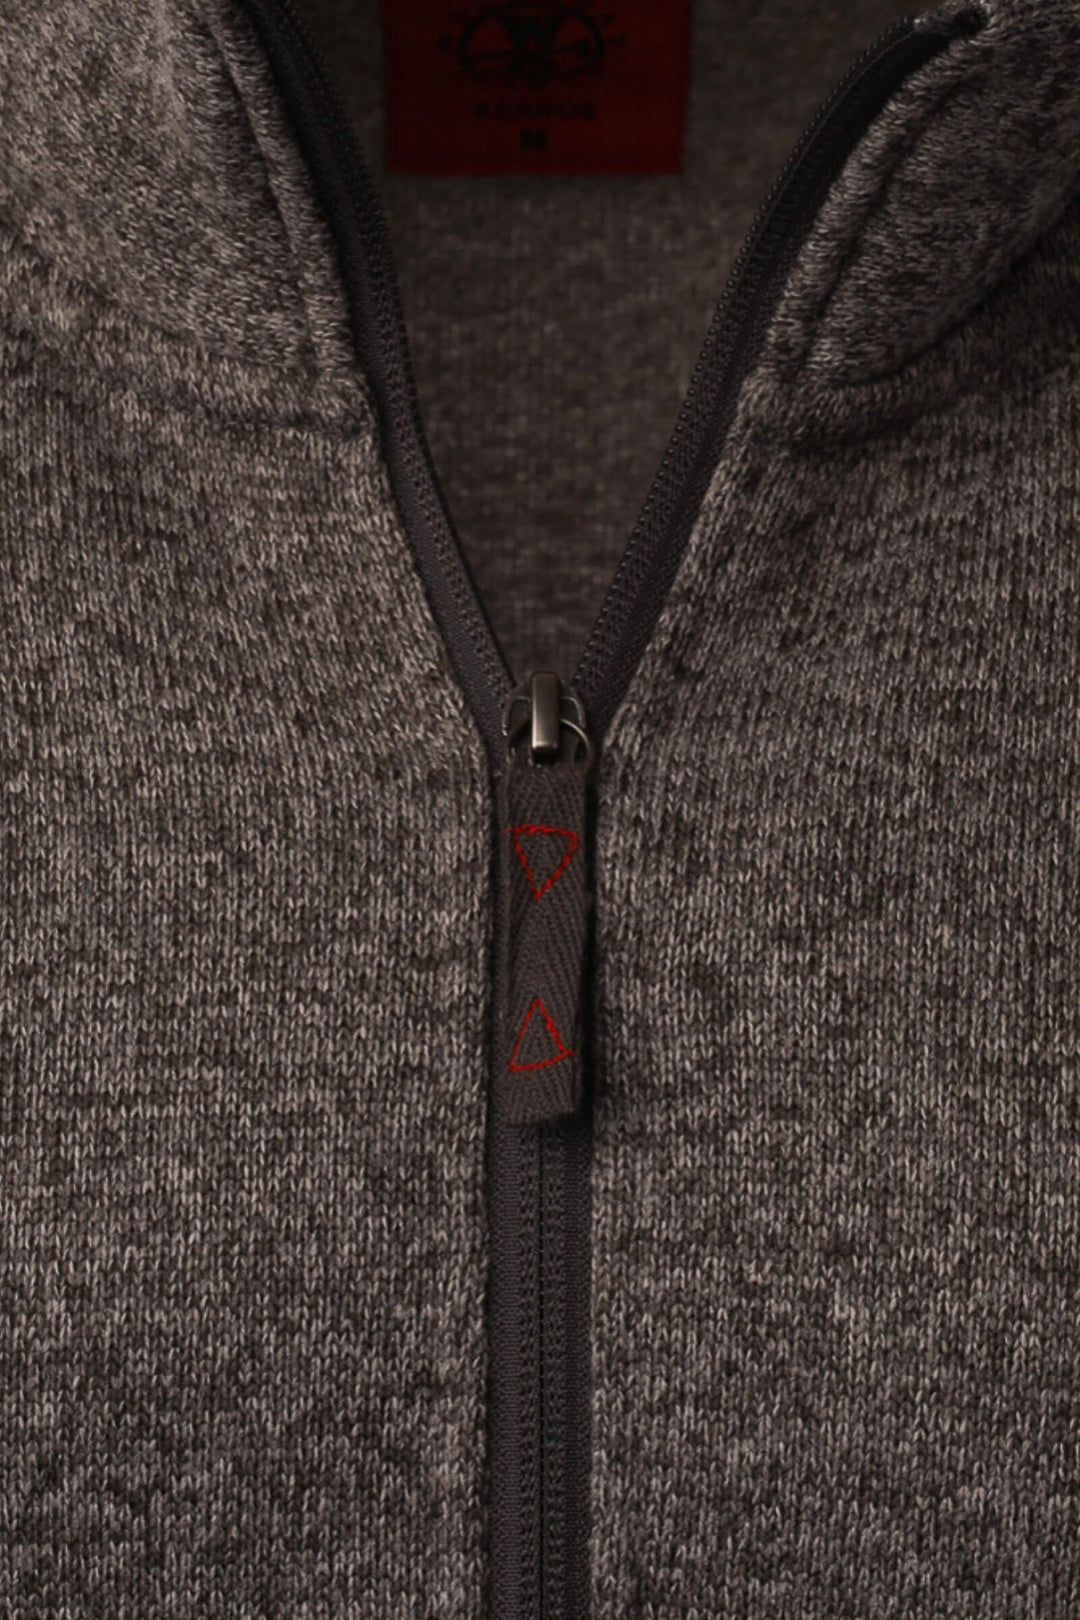 Kerros 1/4 Zip Pullover - Zipper - Woodroad Gear Co.